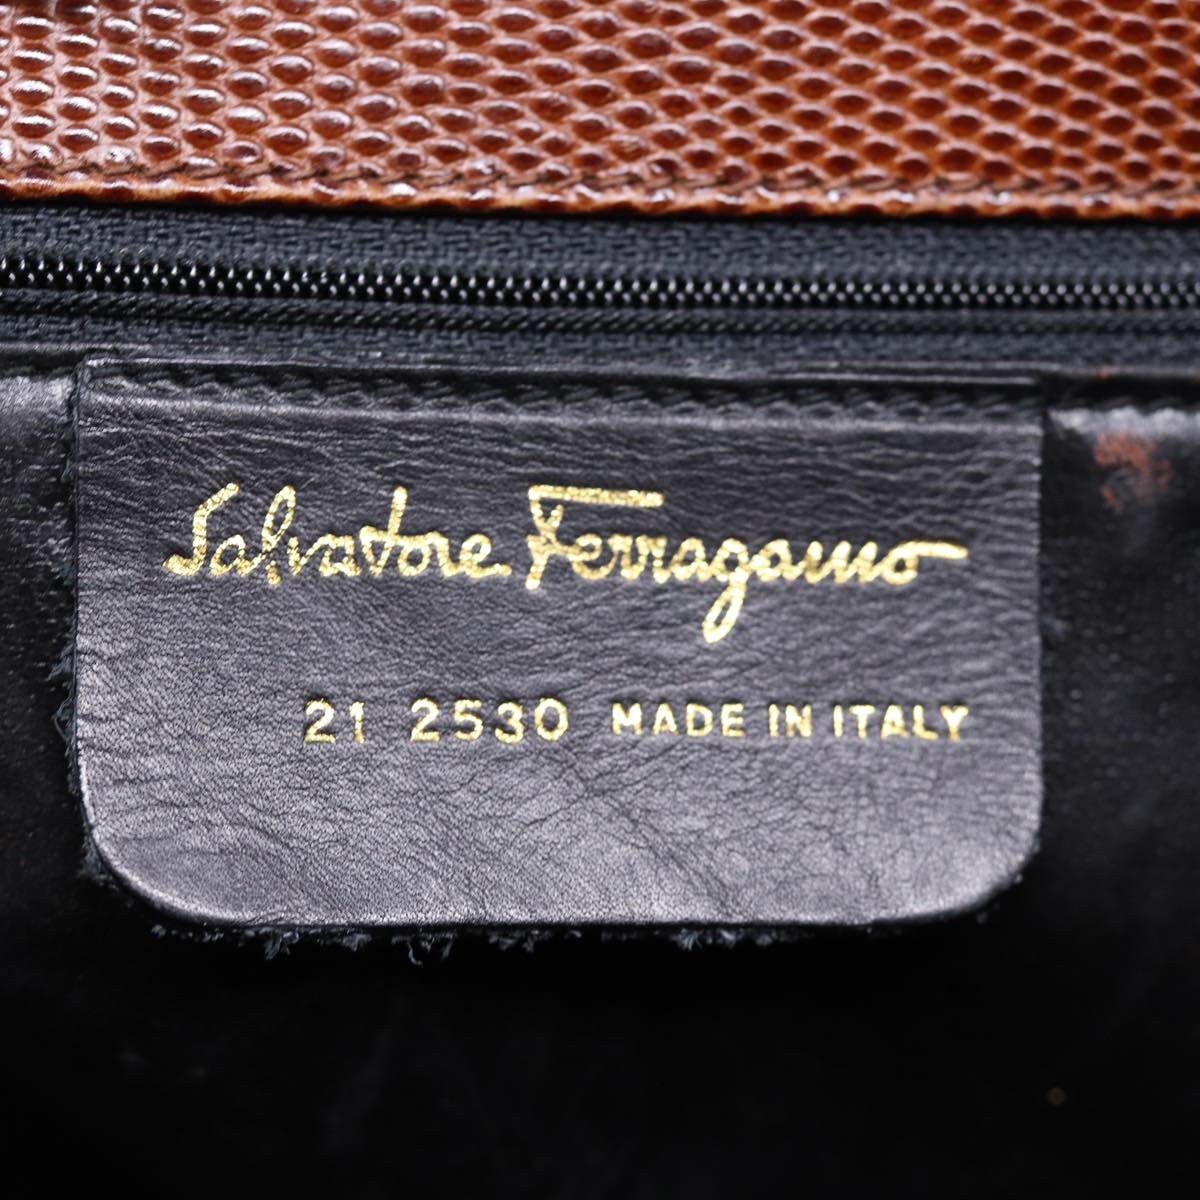 Salvatore Ferragamo Tote Bag Leather Brown Auth ki4536